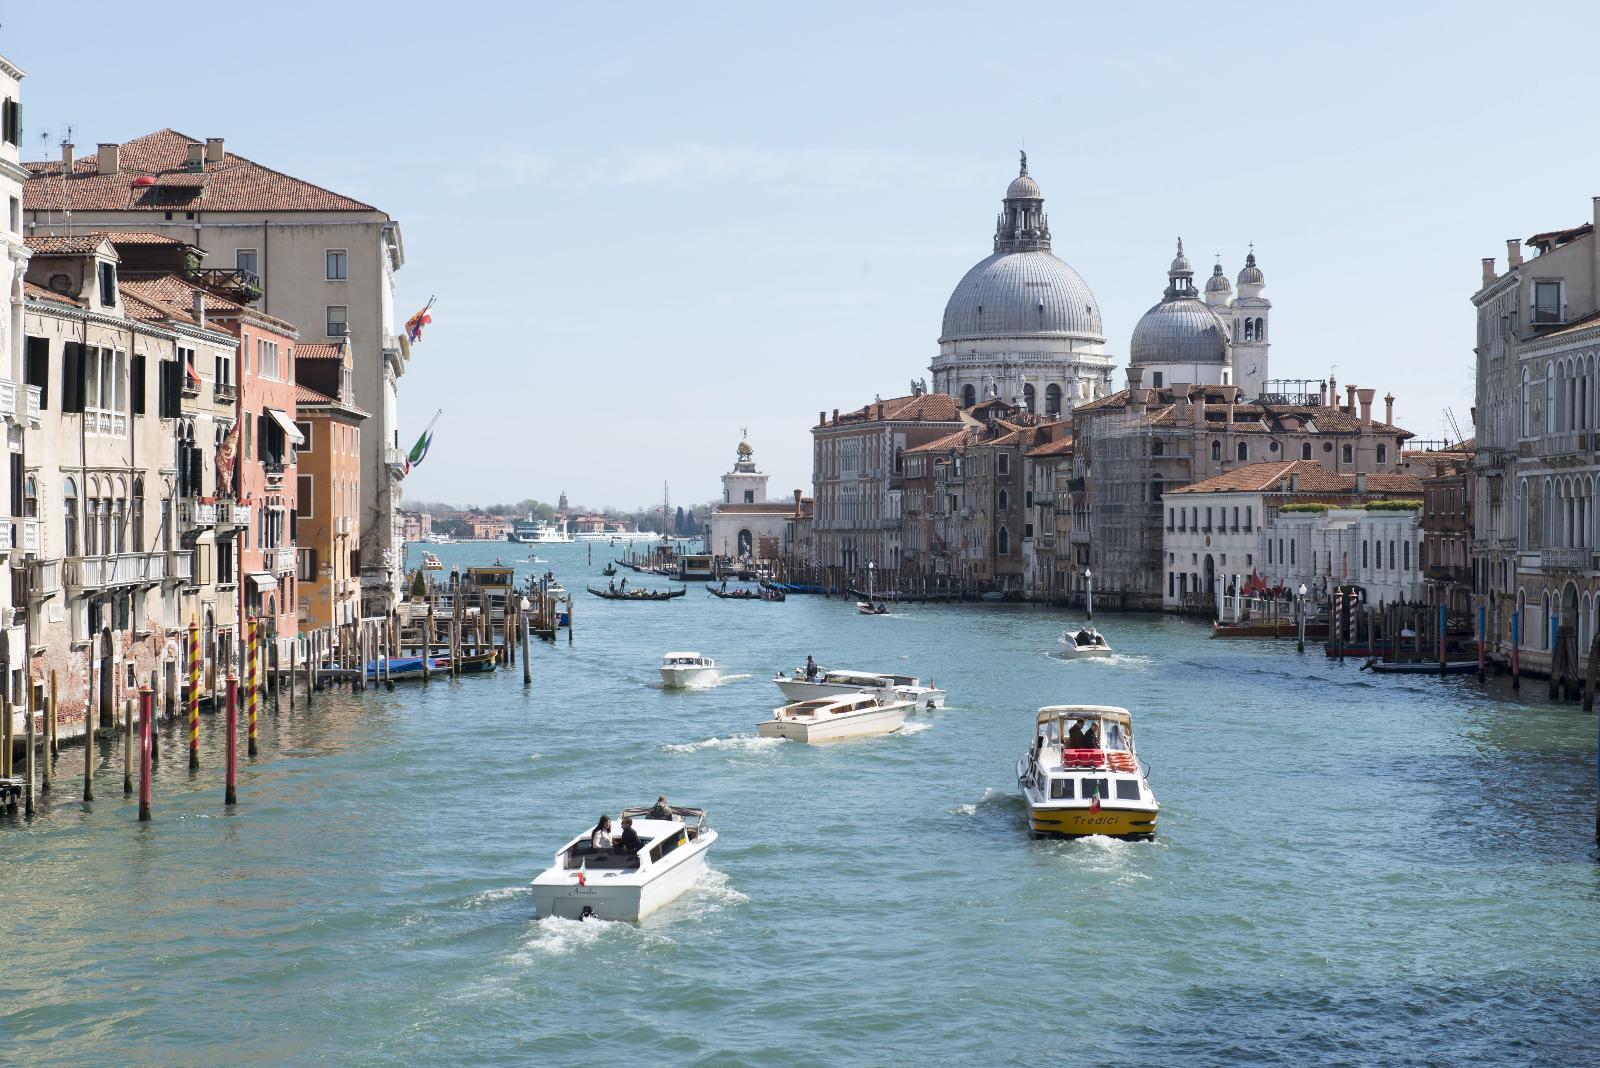 KANALEN: Canal Grande er den bredeste kanalen i Venezia, og selve livsnerven i byen. Her er det alltid mye trafikk, både båtbusser, gondoler og privatbåter.